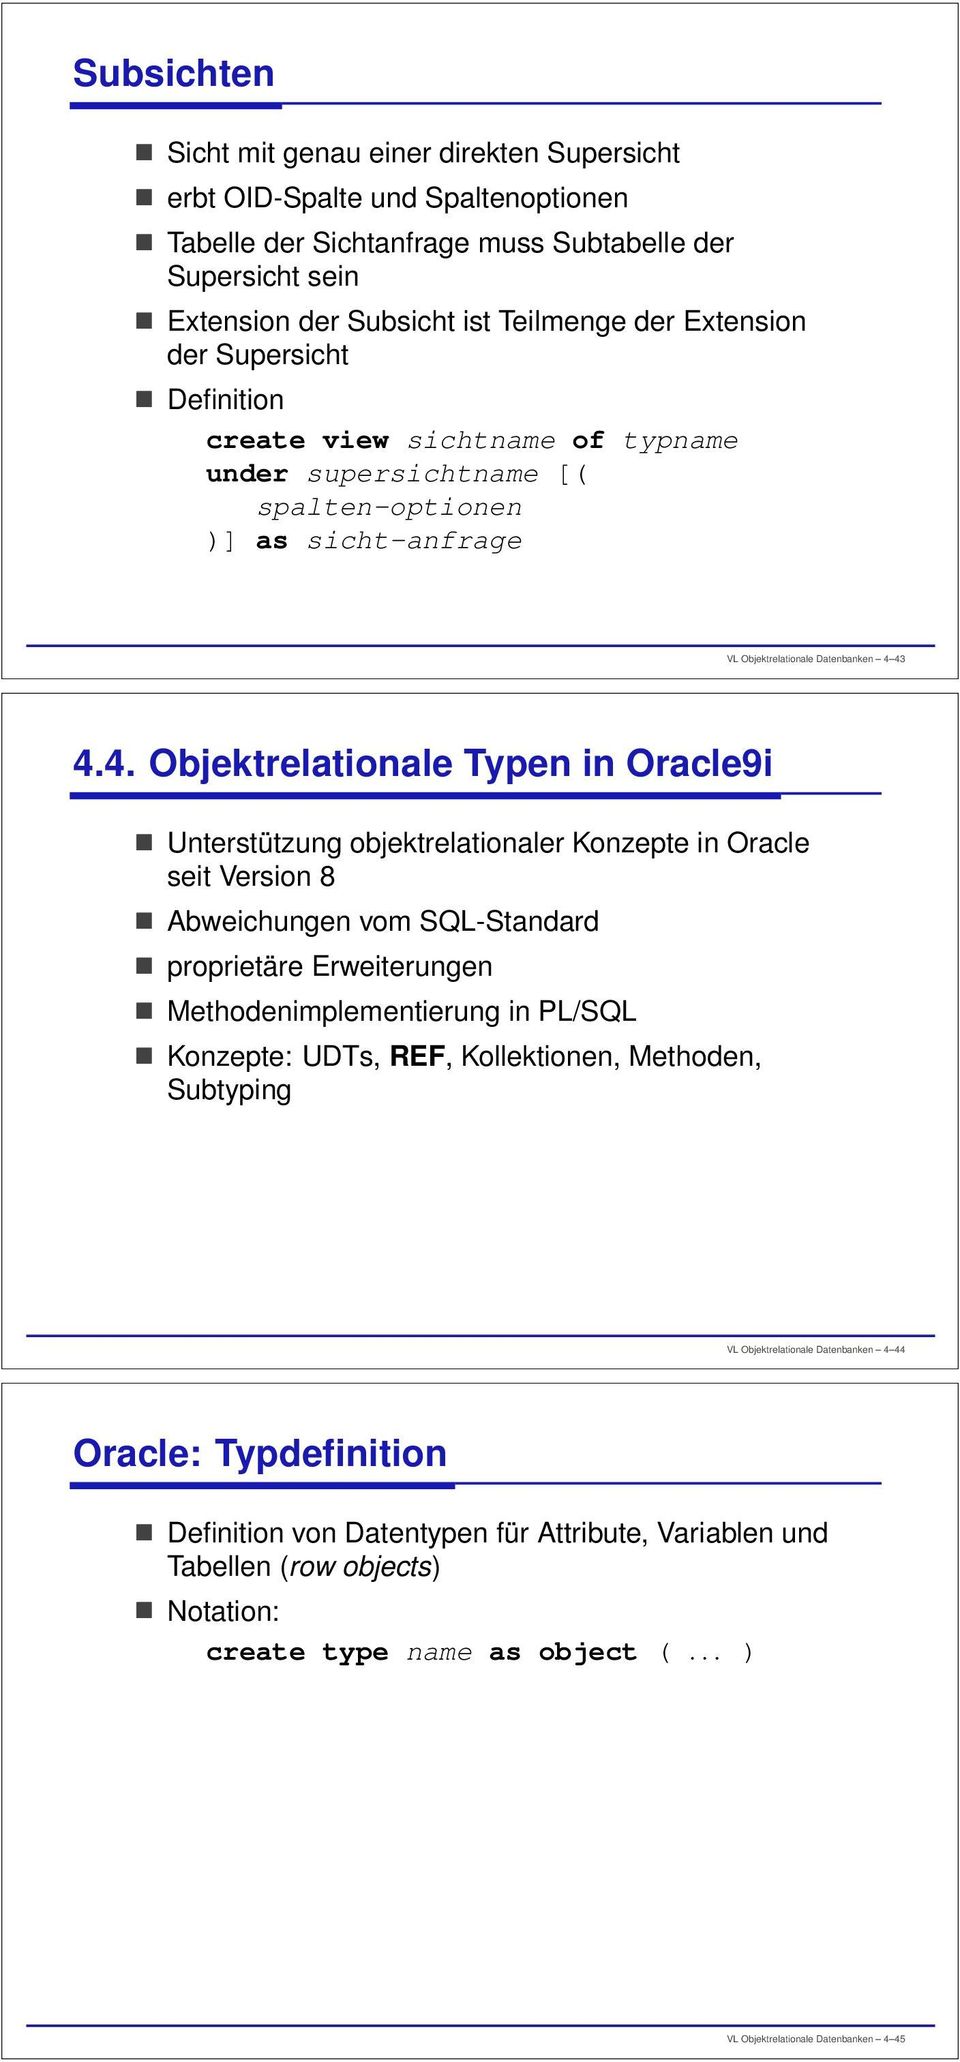 43 4.4. Objektrelationale Typen in Oracle9i Unterstützung objektrelationaler Konzepte in Oracle seit Version 8 Abweichungen vom SQL-Standard proprietäre Erweiterungen Methodenimplementierung in